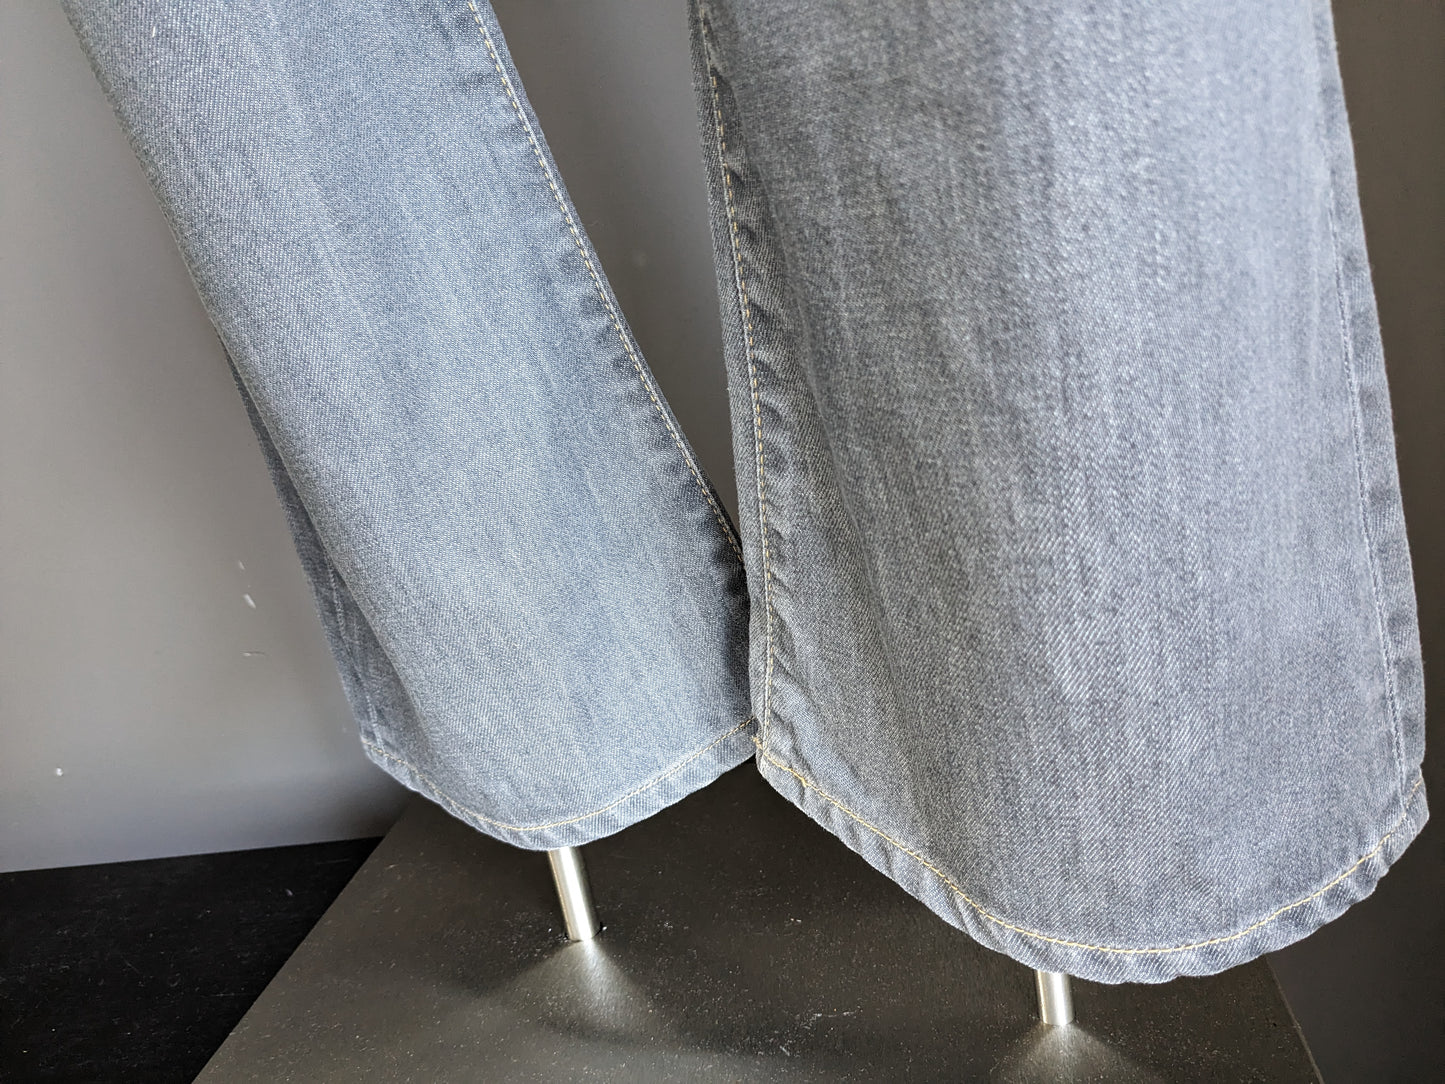 Big Star jeans. Grijs gekleurd. Uitlopende pijpen. Maat W32 - L32. type Blake